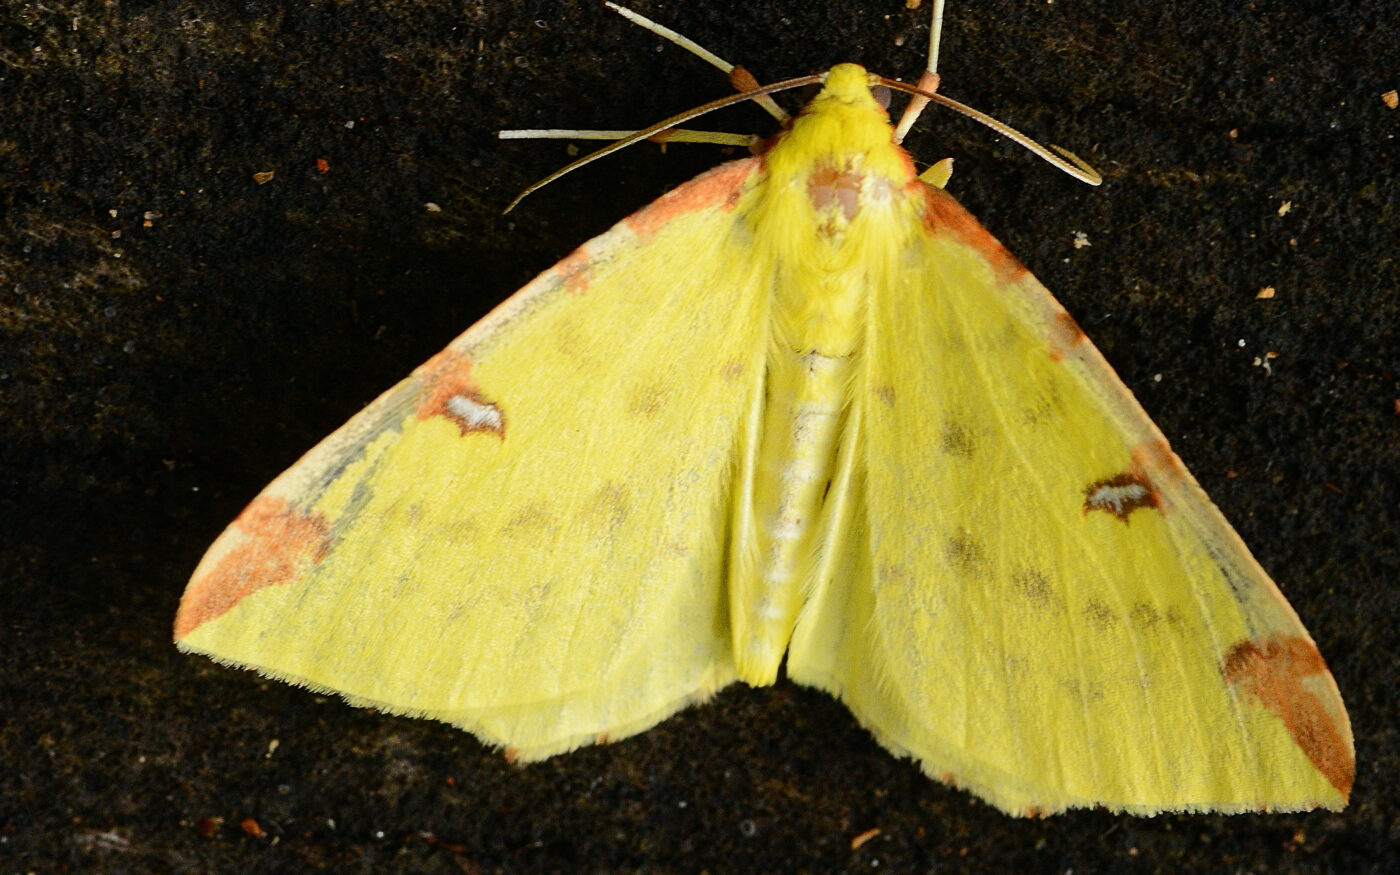 A common moth, a Brimstone moth